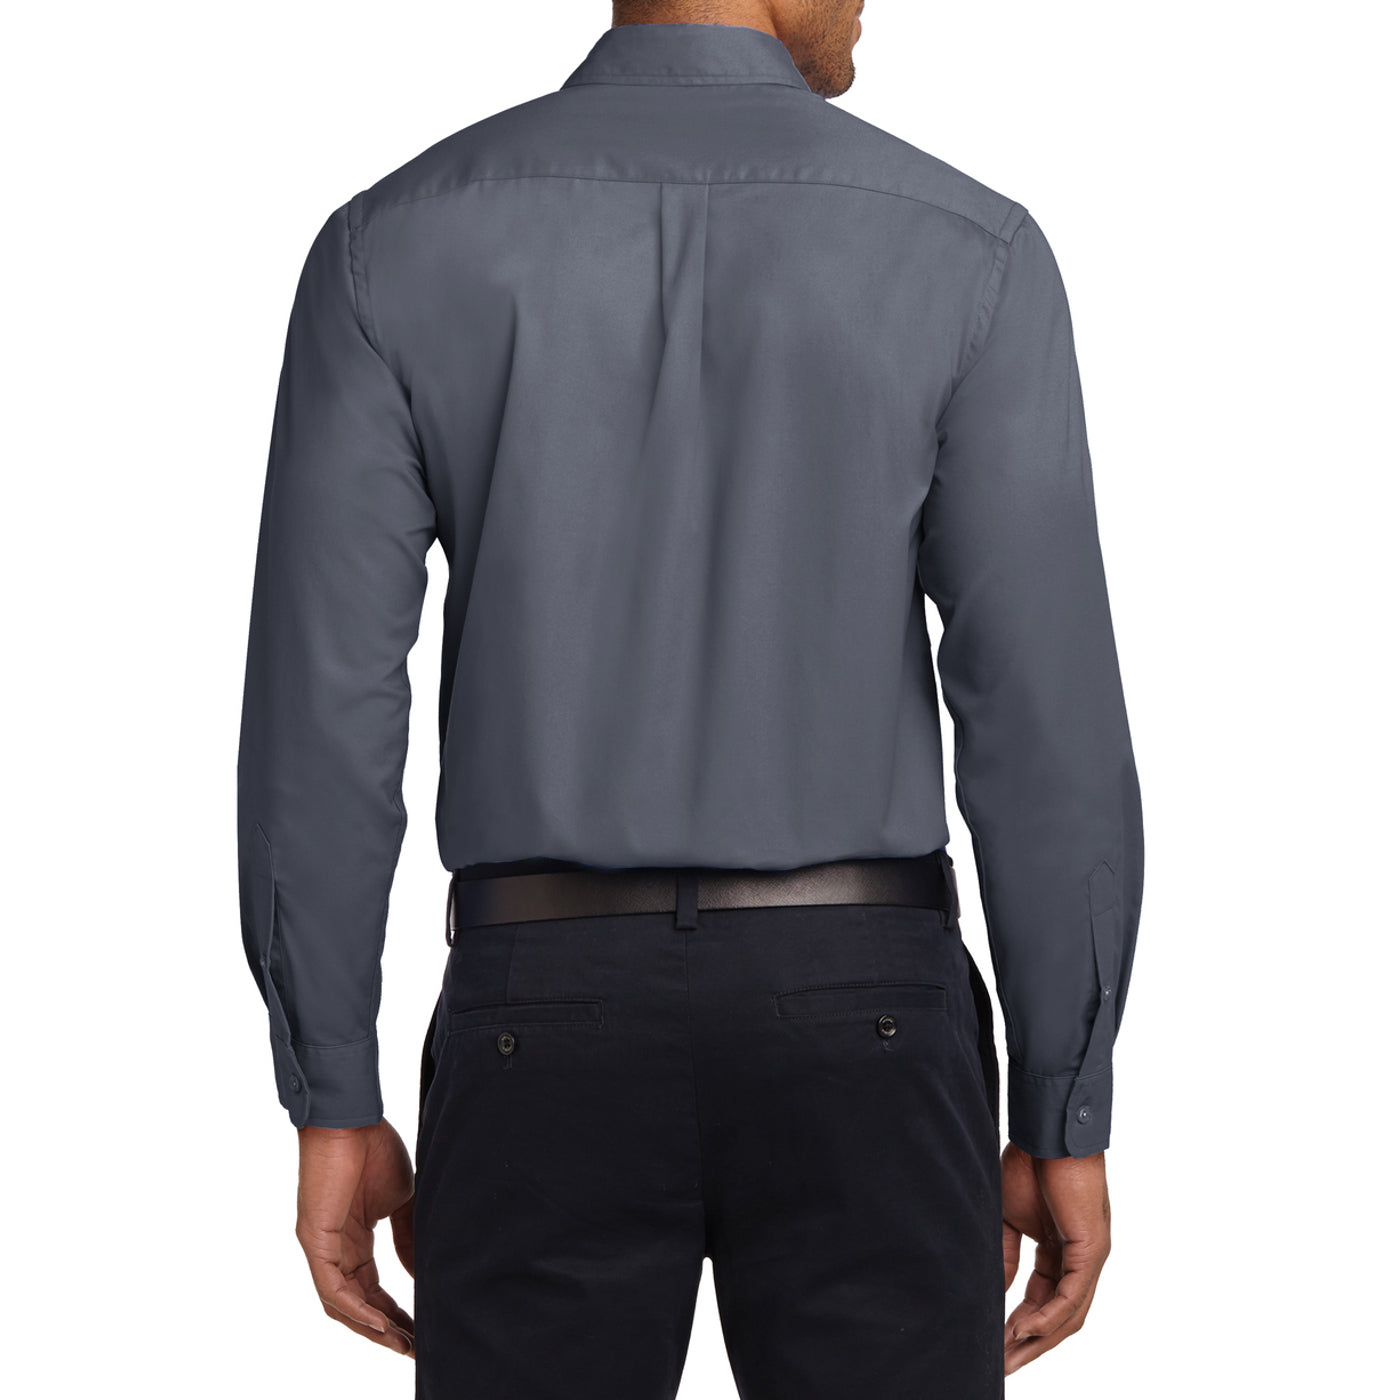 Men's Long Sleeve Easy Care Shirt - Steel Grey/ Light Stone - Back